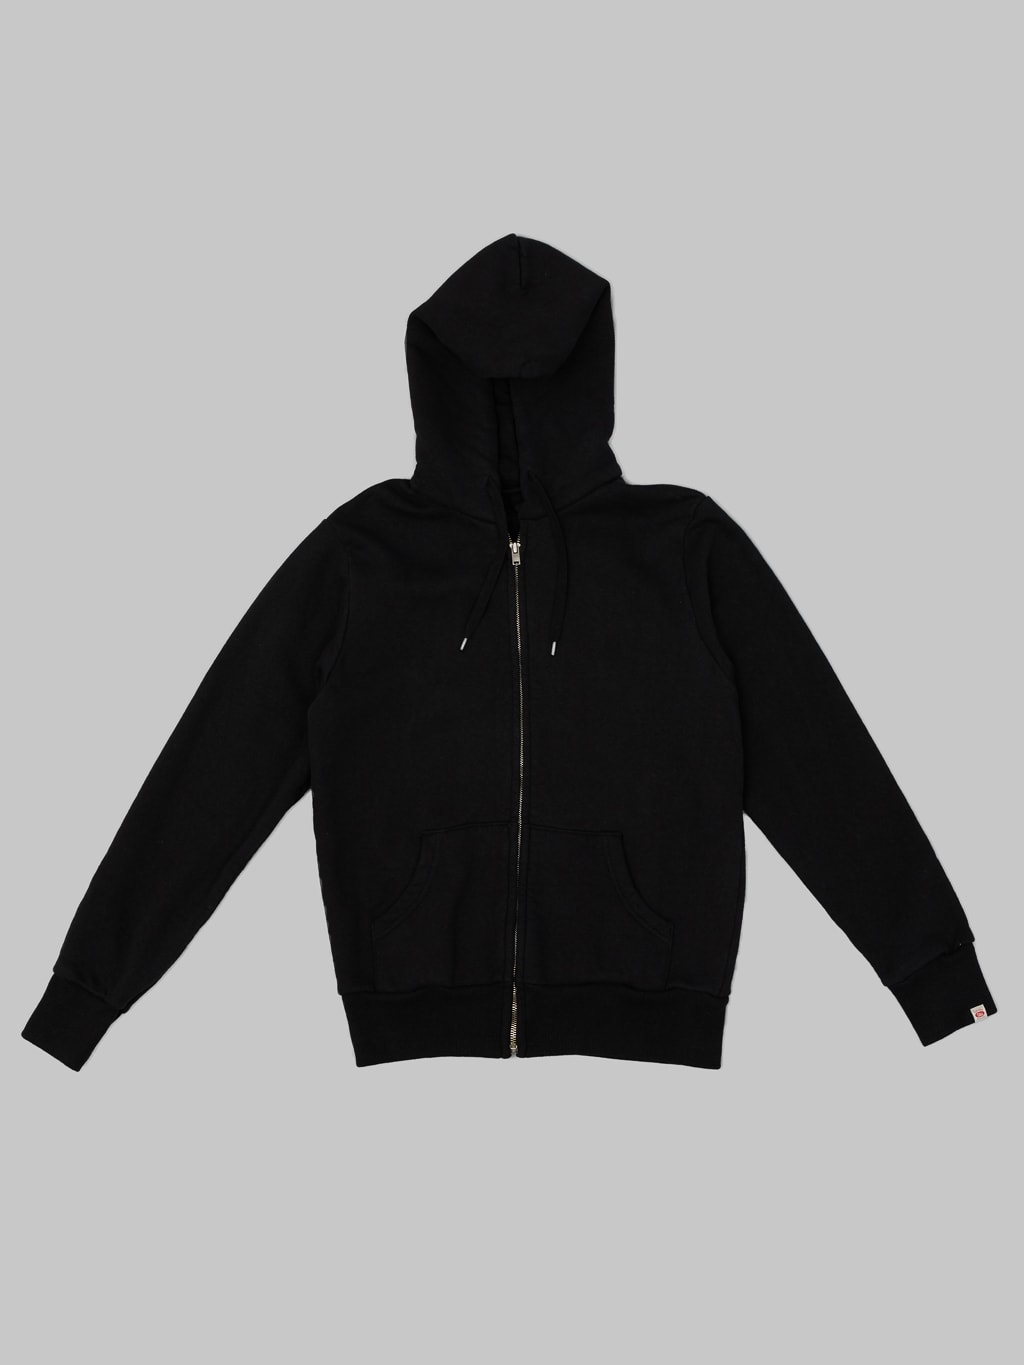 UES hoodie Zip Parka black made in Japan